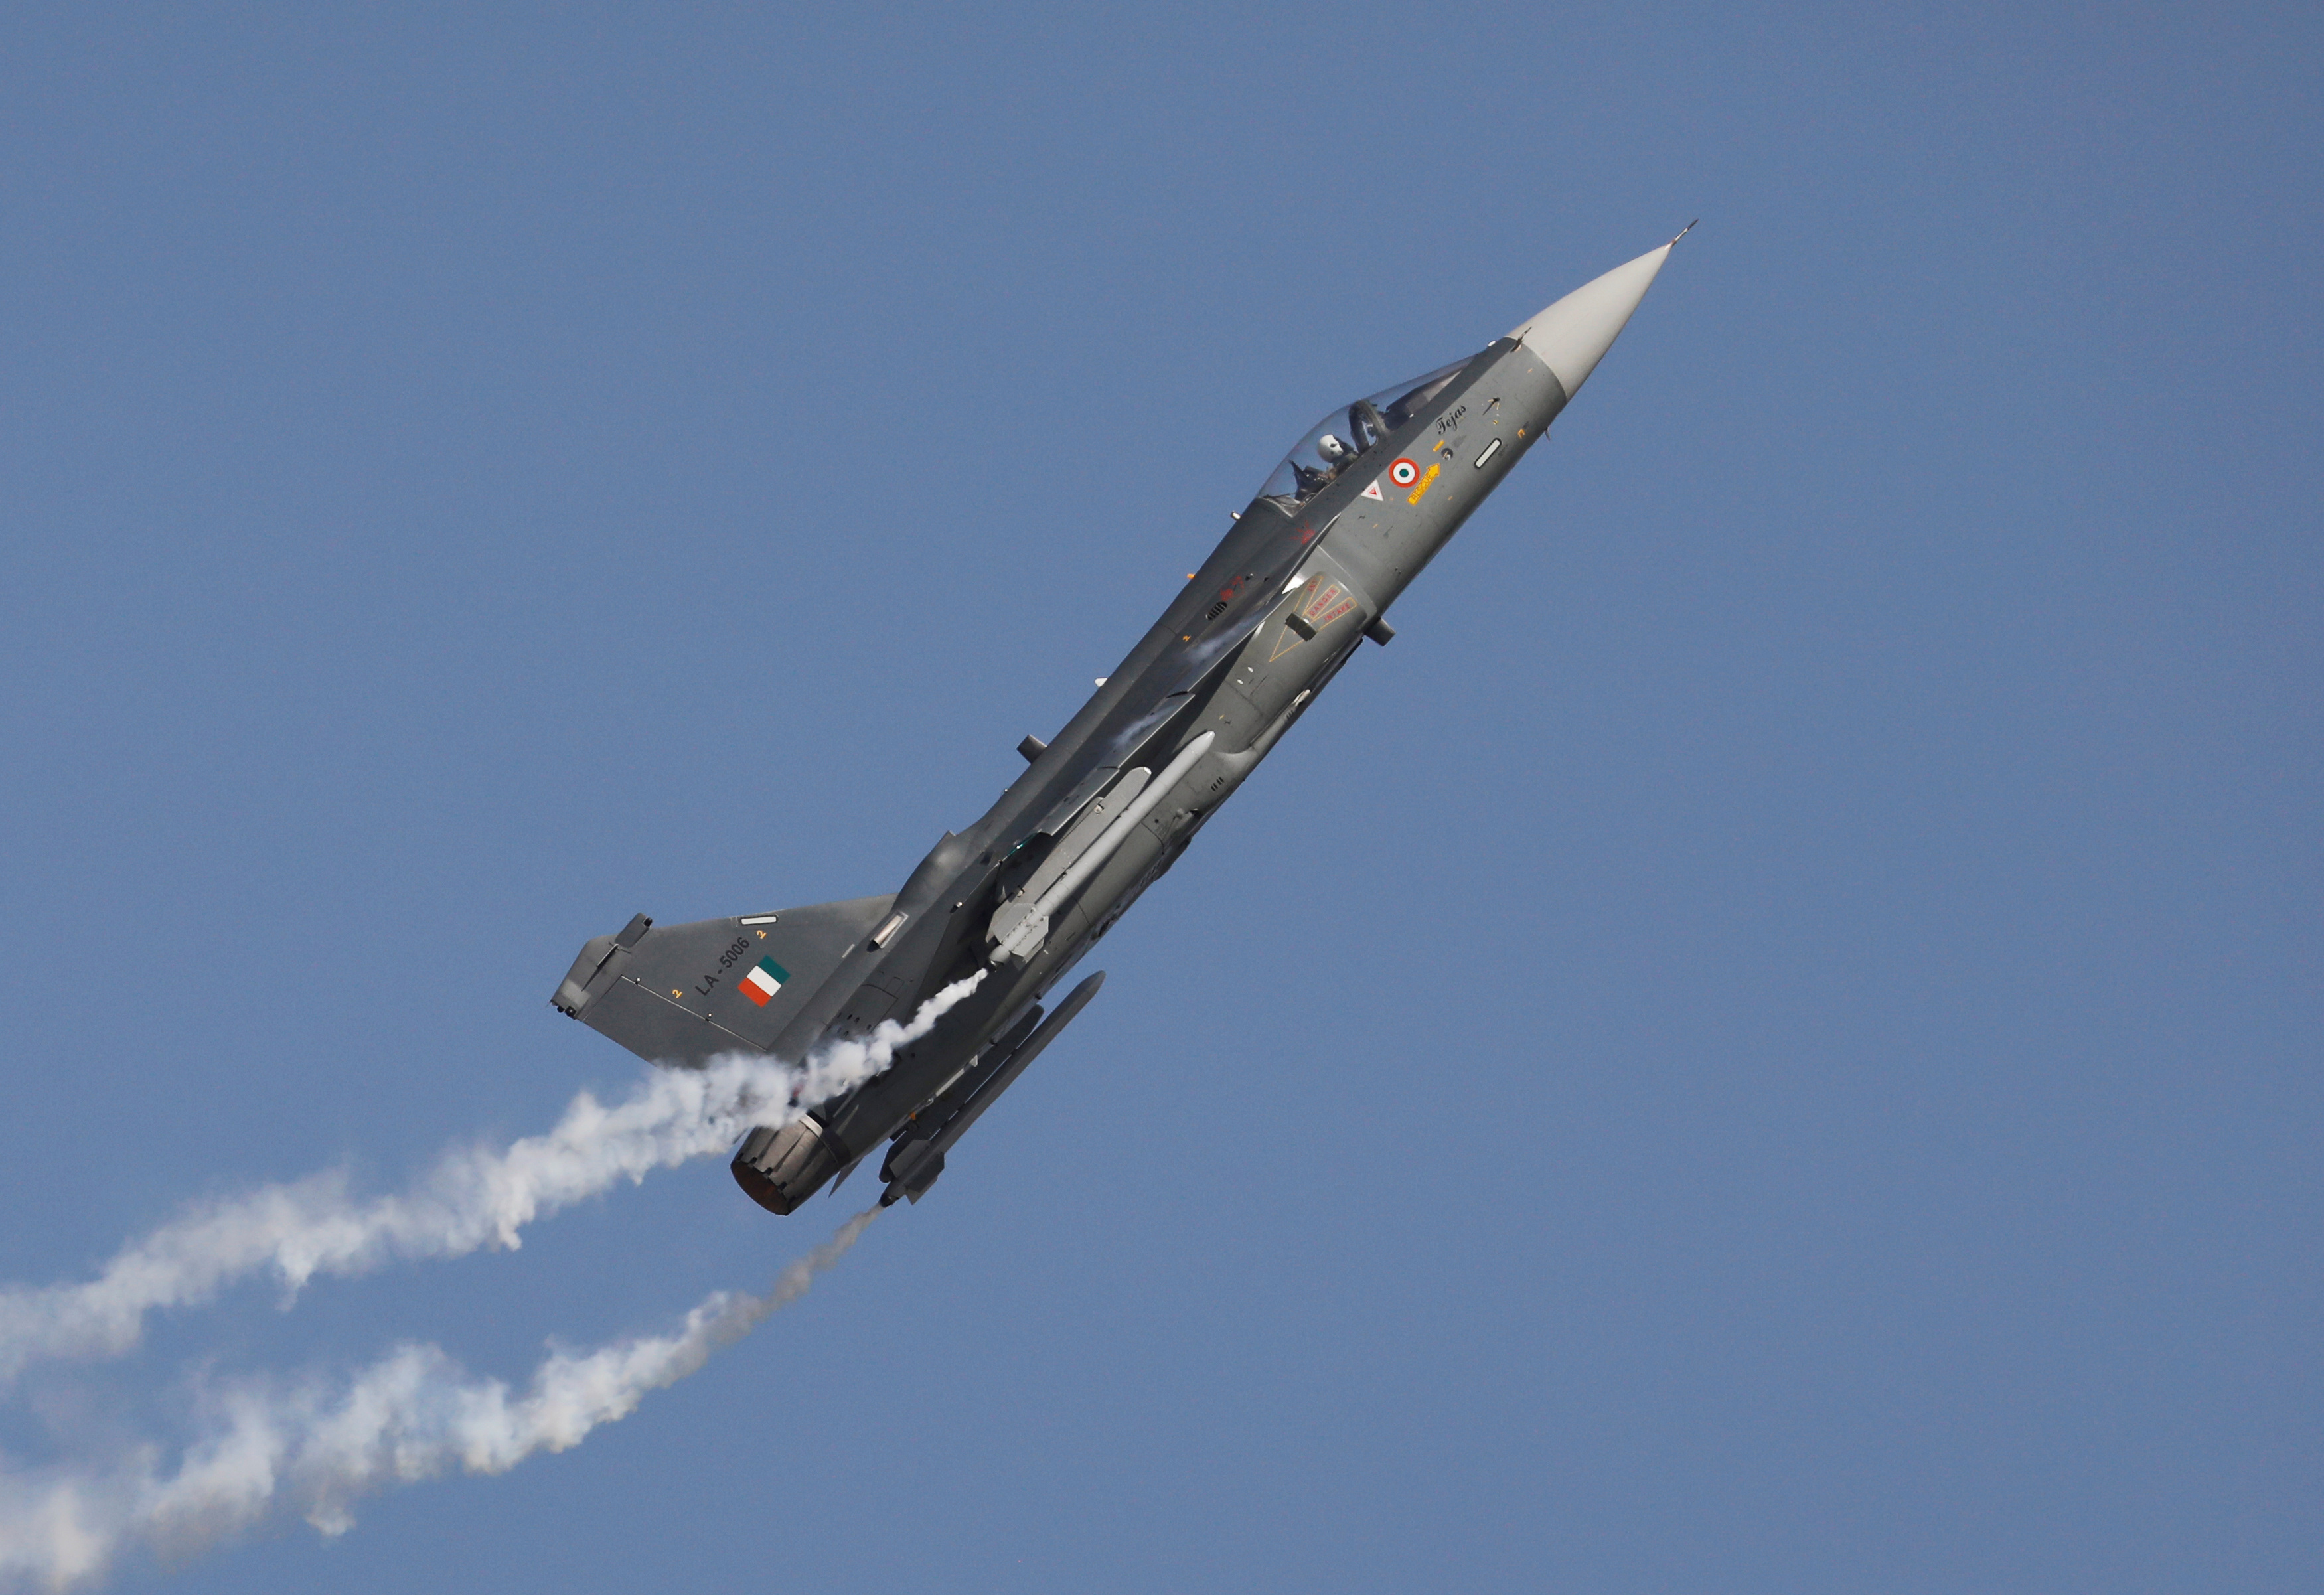  An Indian Air Force (IAF) light combat aircraft 